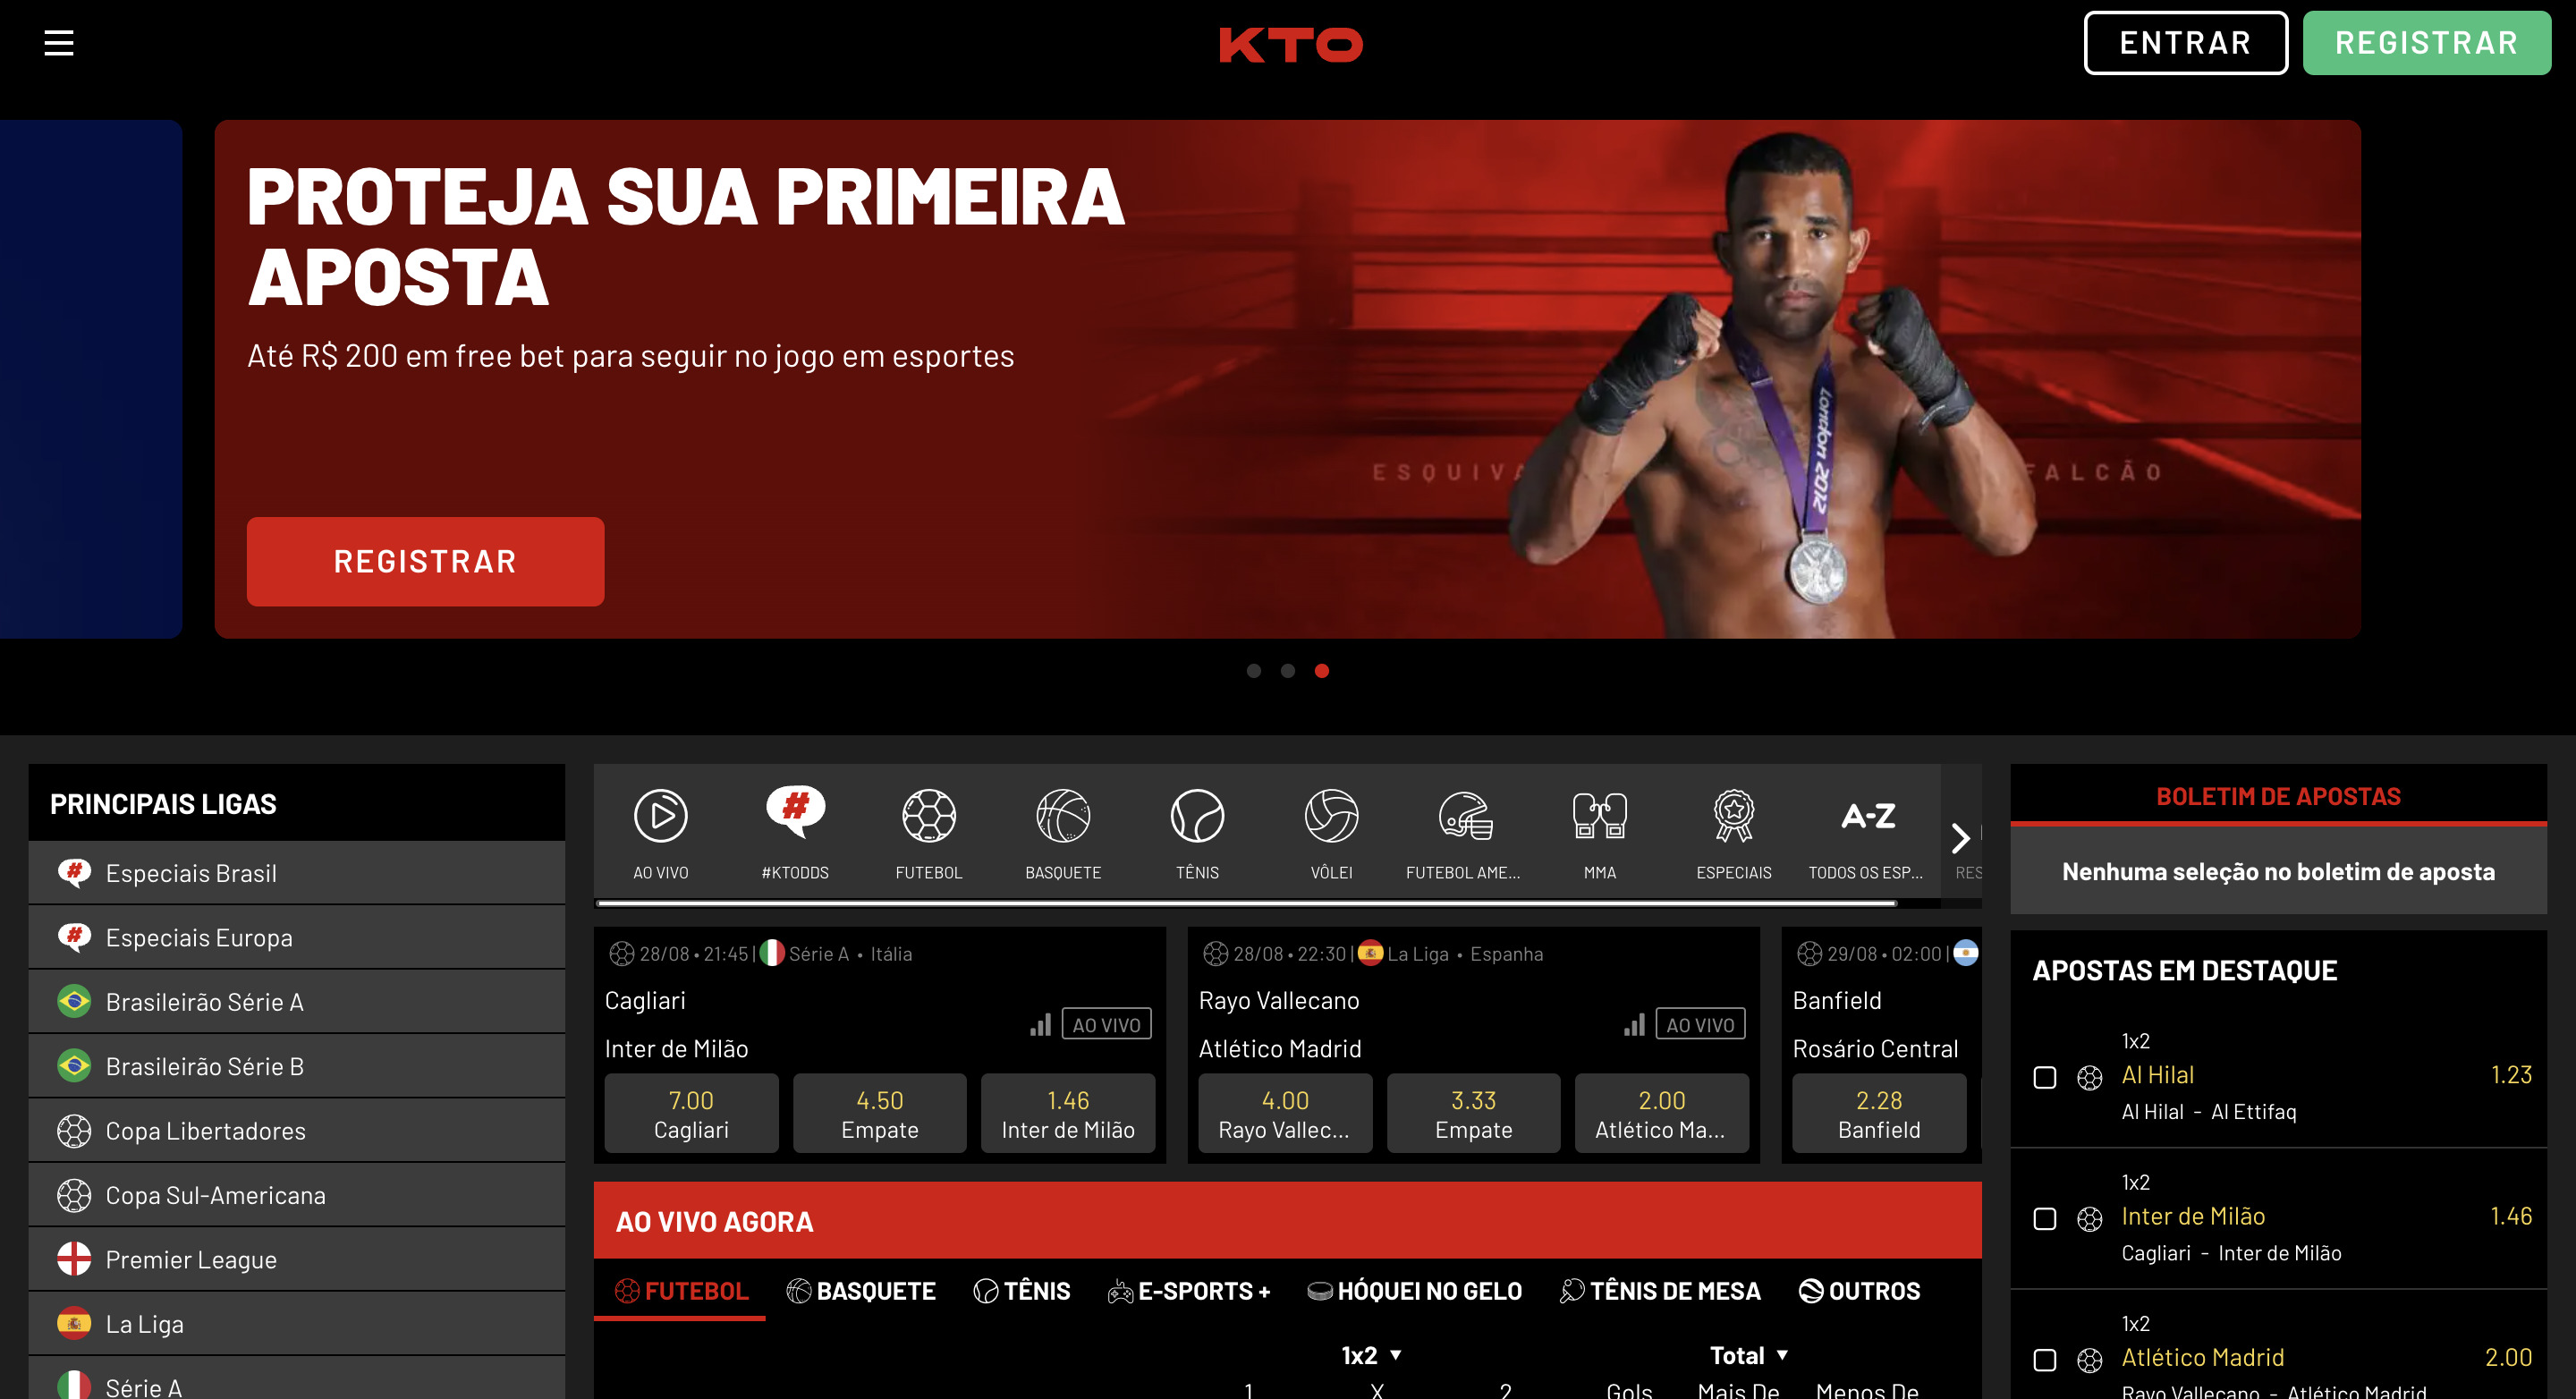 KTO Página Principal - Imagem da página principal do site KTO, destacando sua experiência do usuário e serviços em 2023.